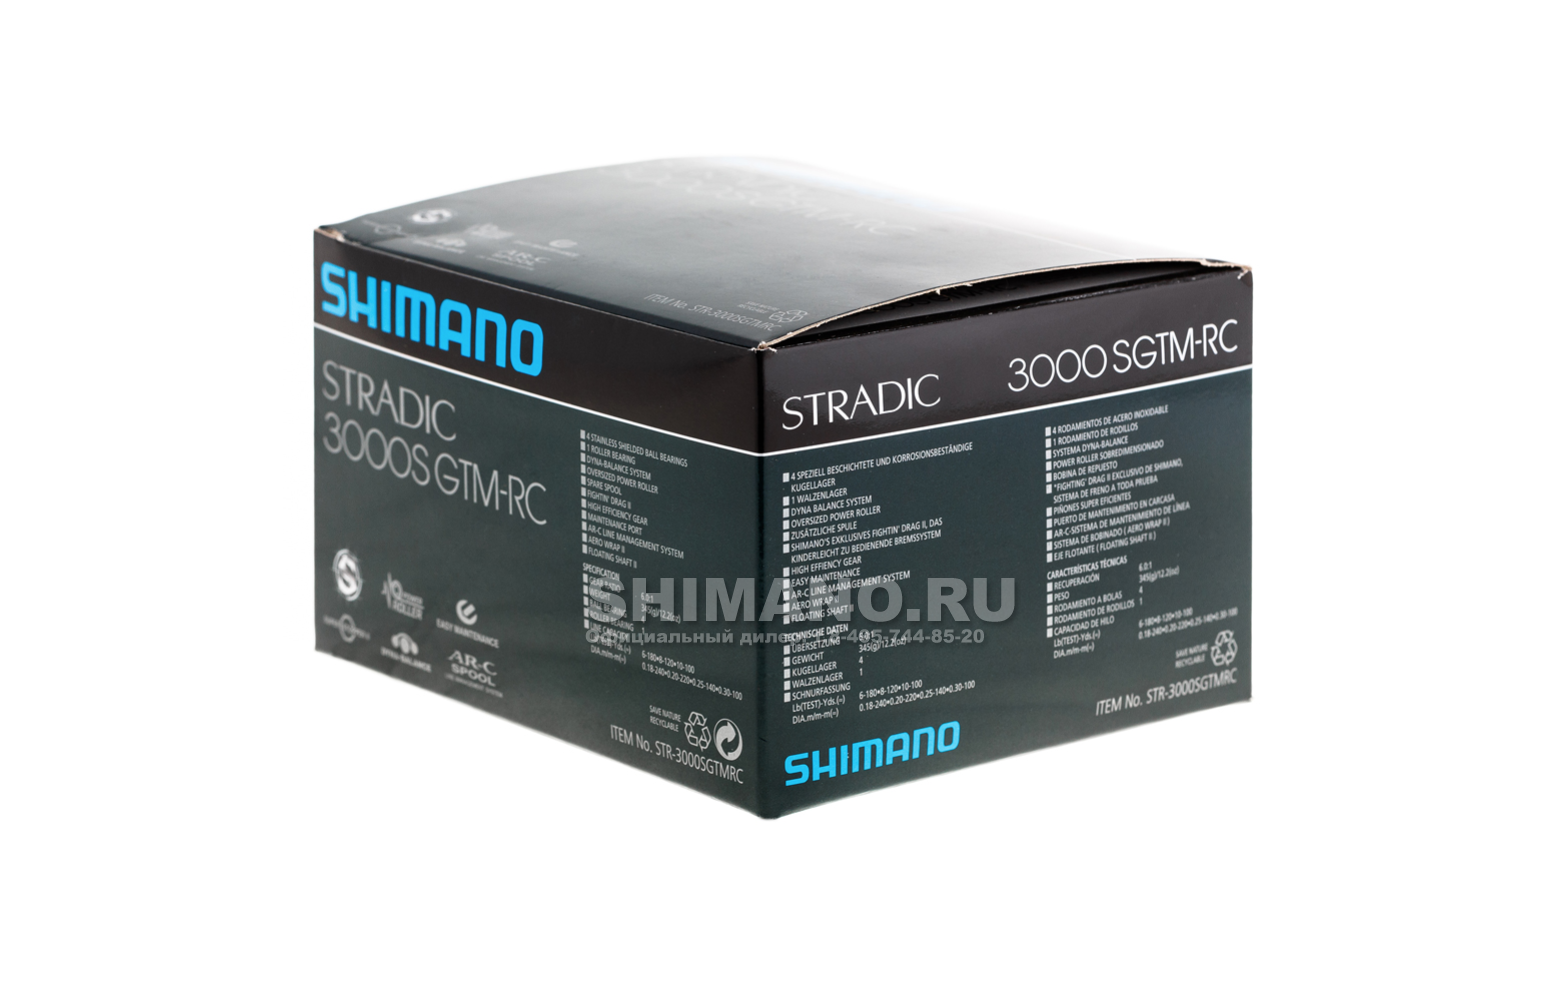 Купить Катушка Shimano Stradic 3000S GTM RC в Москве в интернет-магазине  Shimano